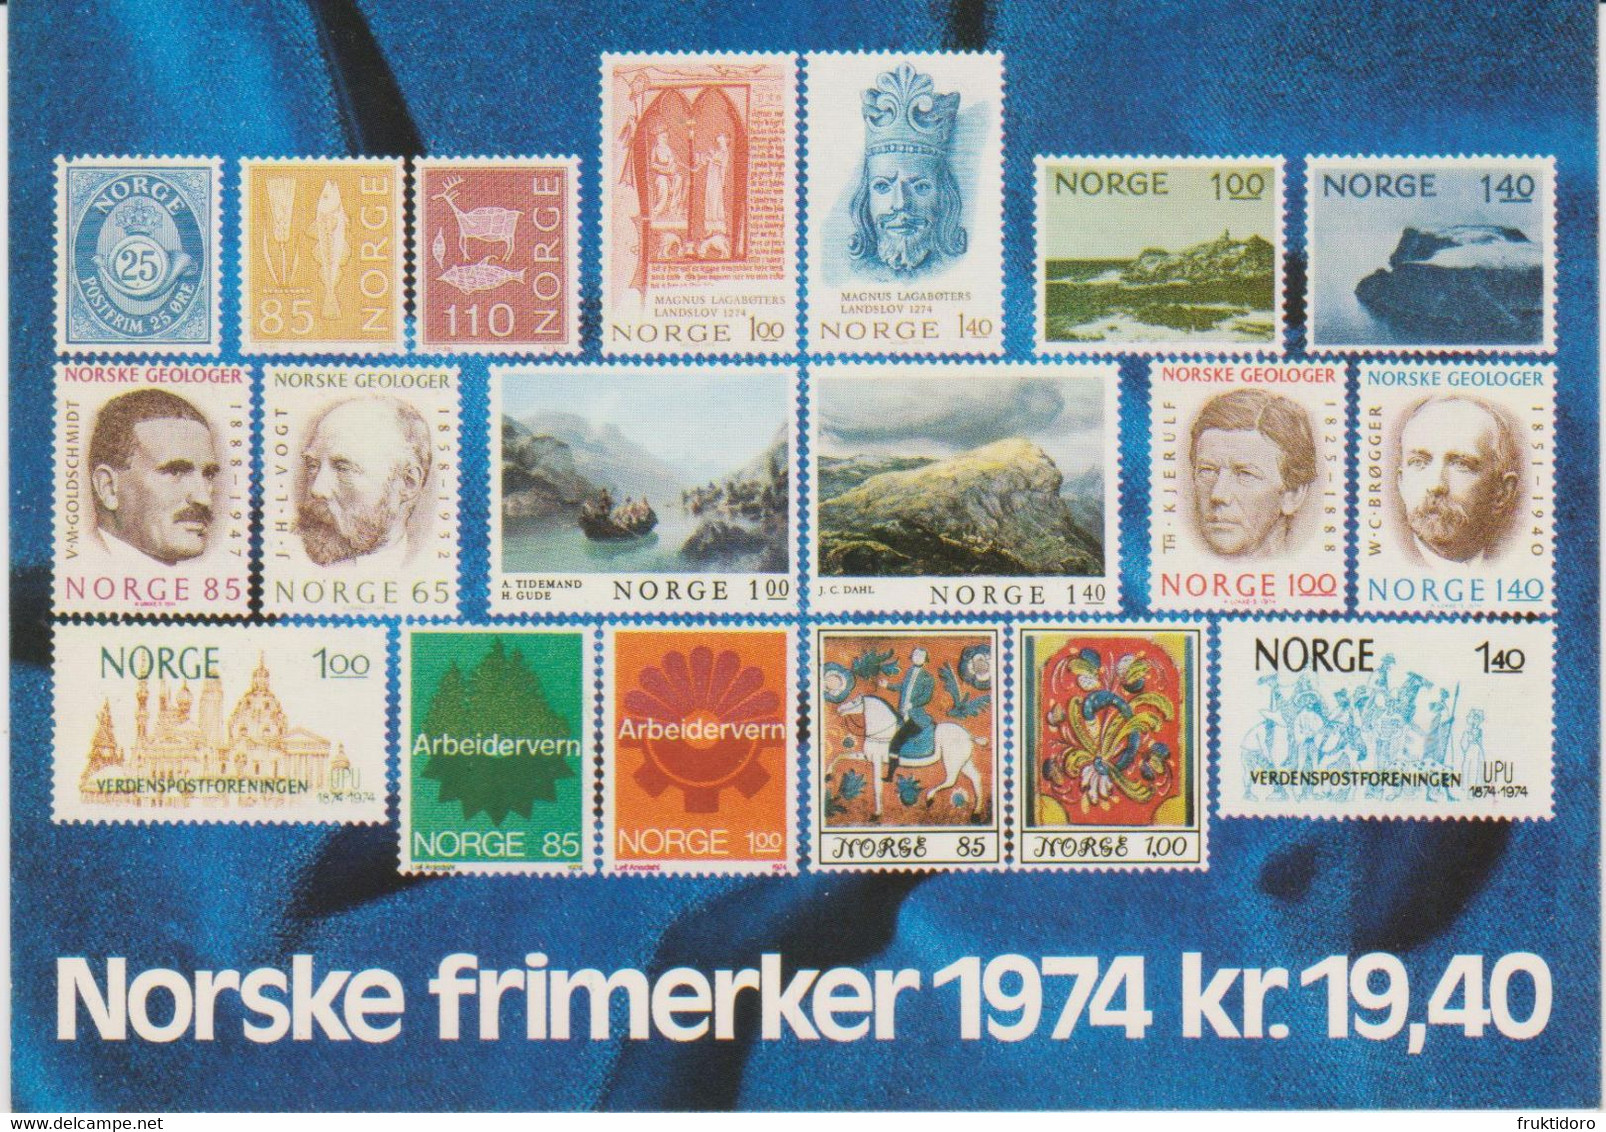 Norway Year Set Norwegian Stamps 1974 - Posthorn - North Cape - Magnus Lagabøte's State Law - Industrial Safety ** - Volledig Jaar